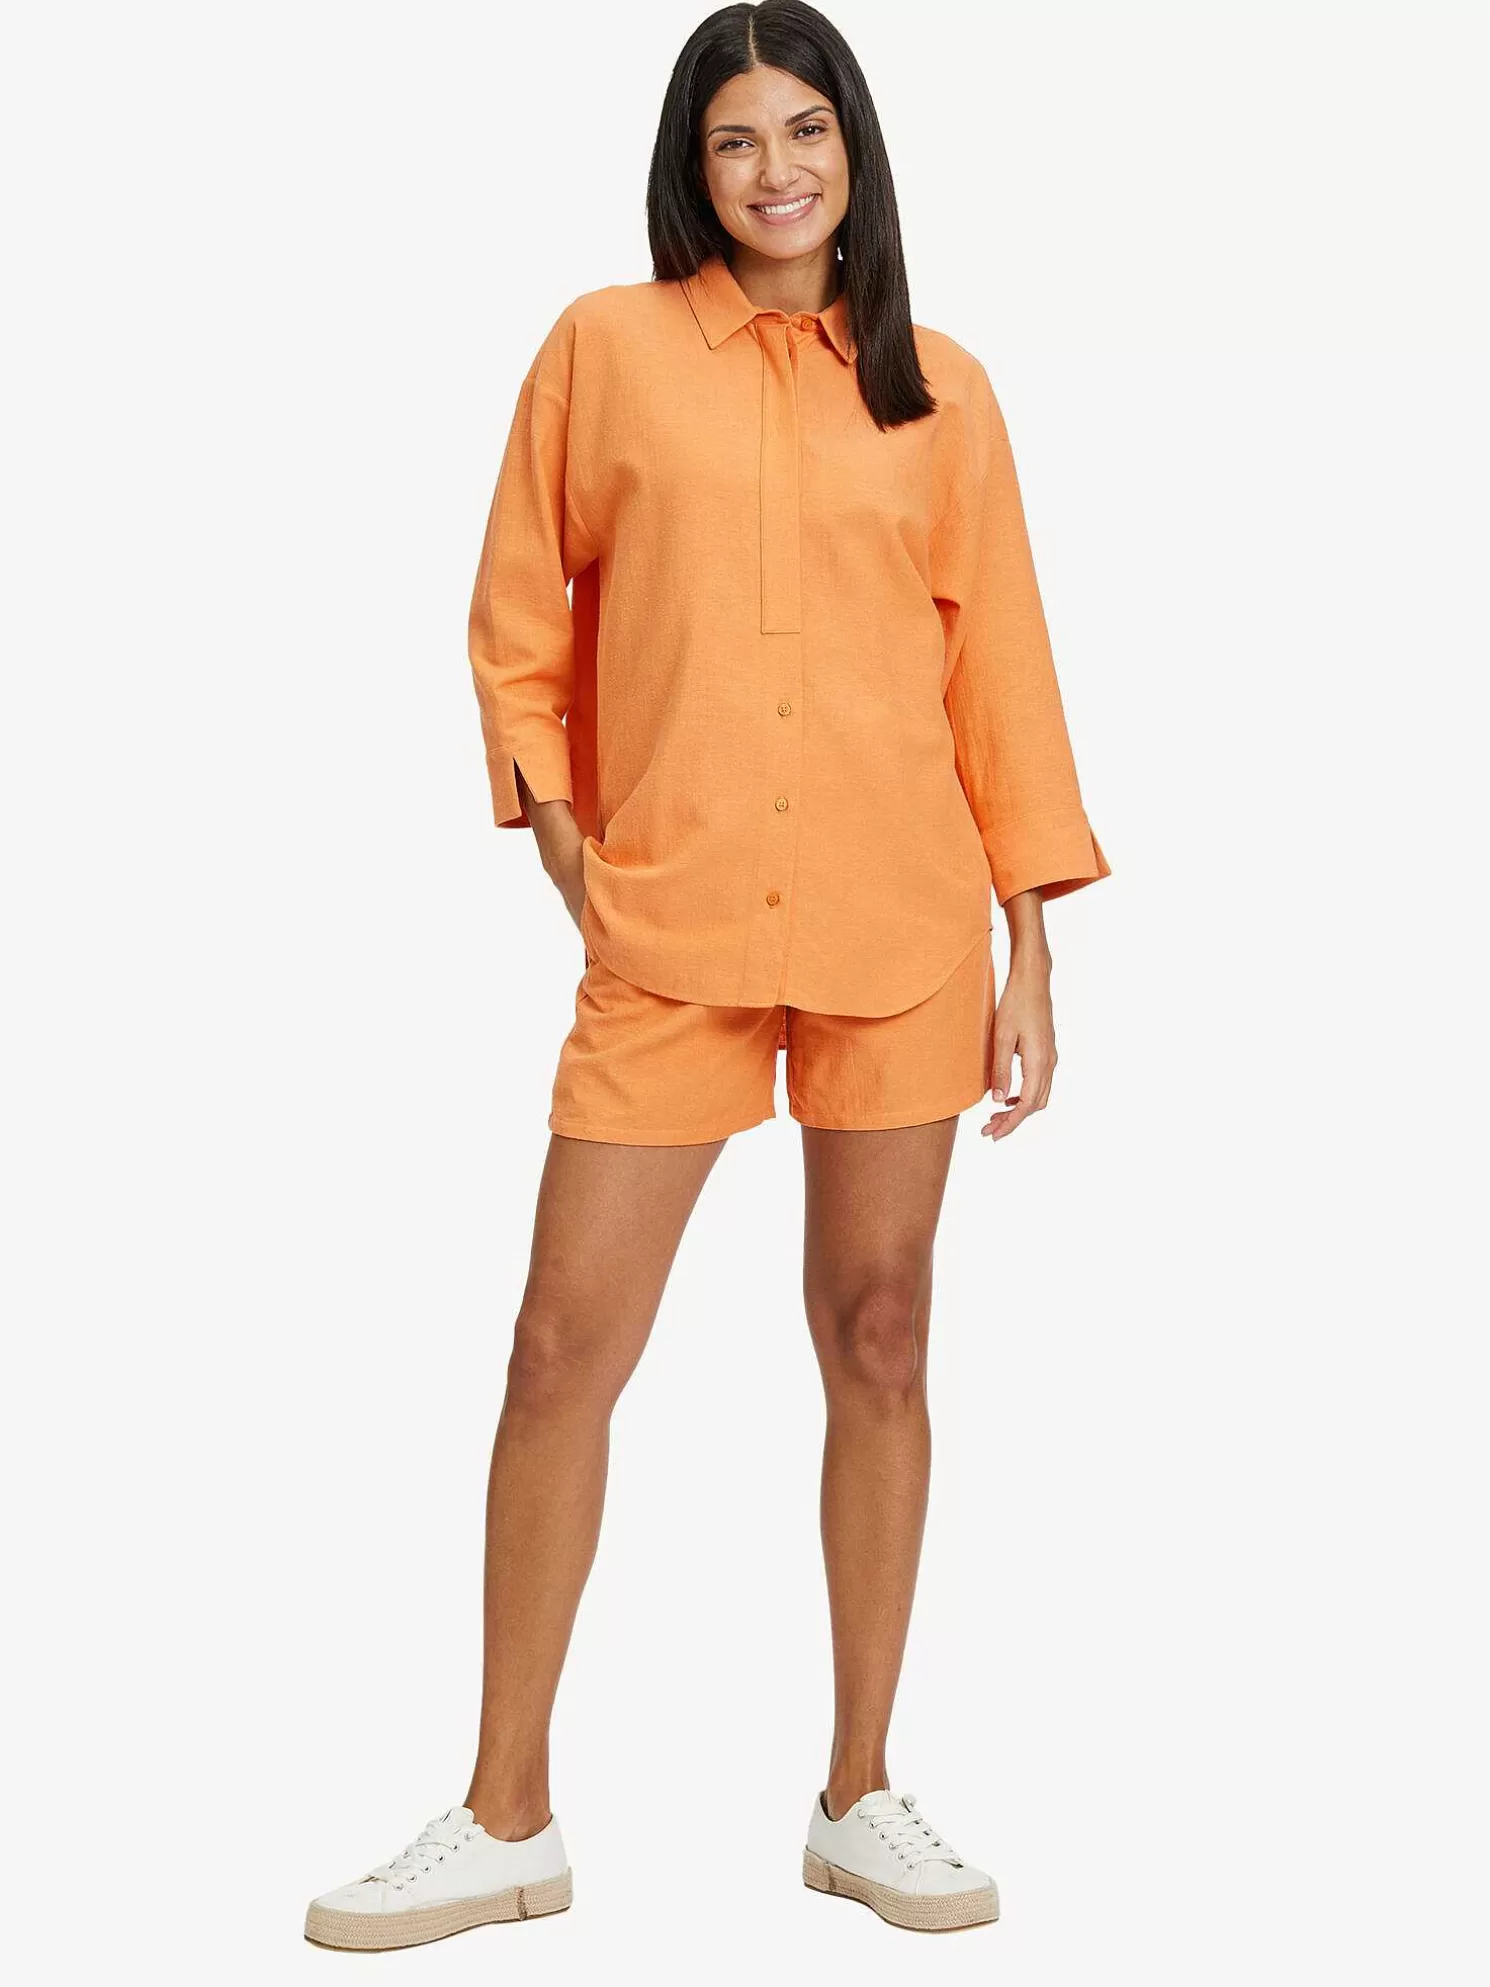 Boho Bluse - Orange*Tamaris Hot